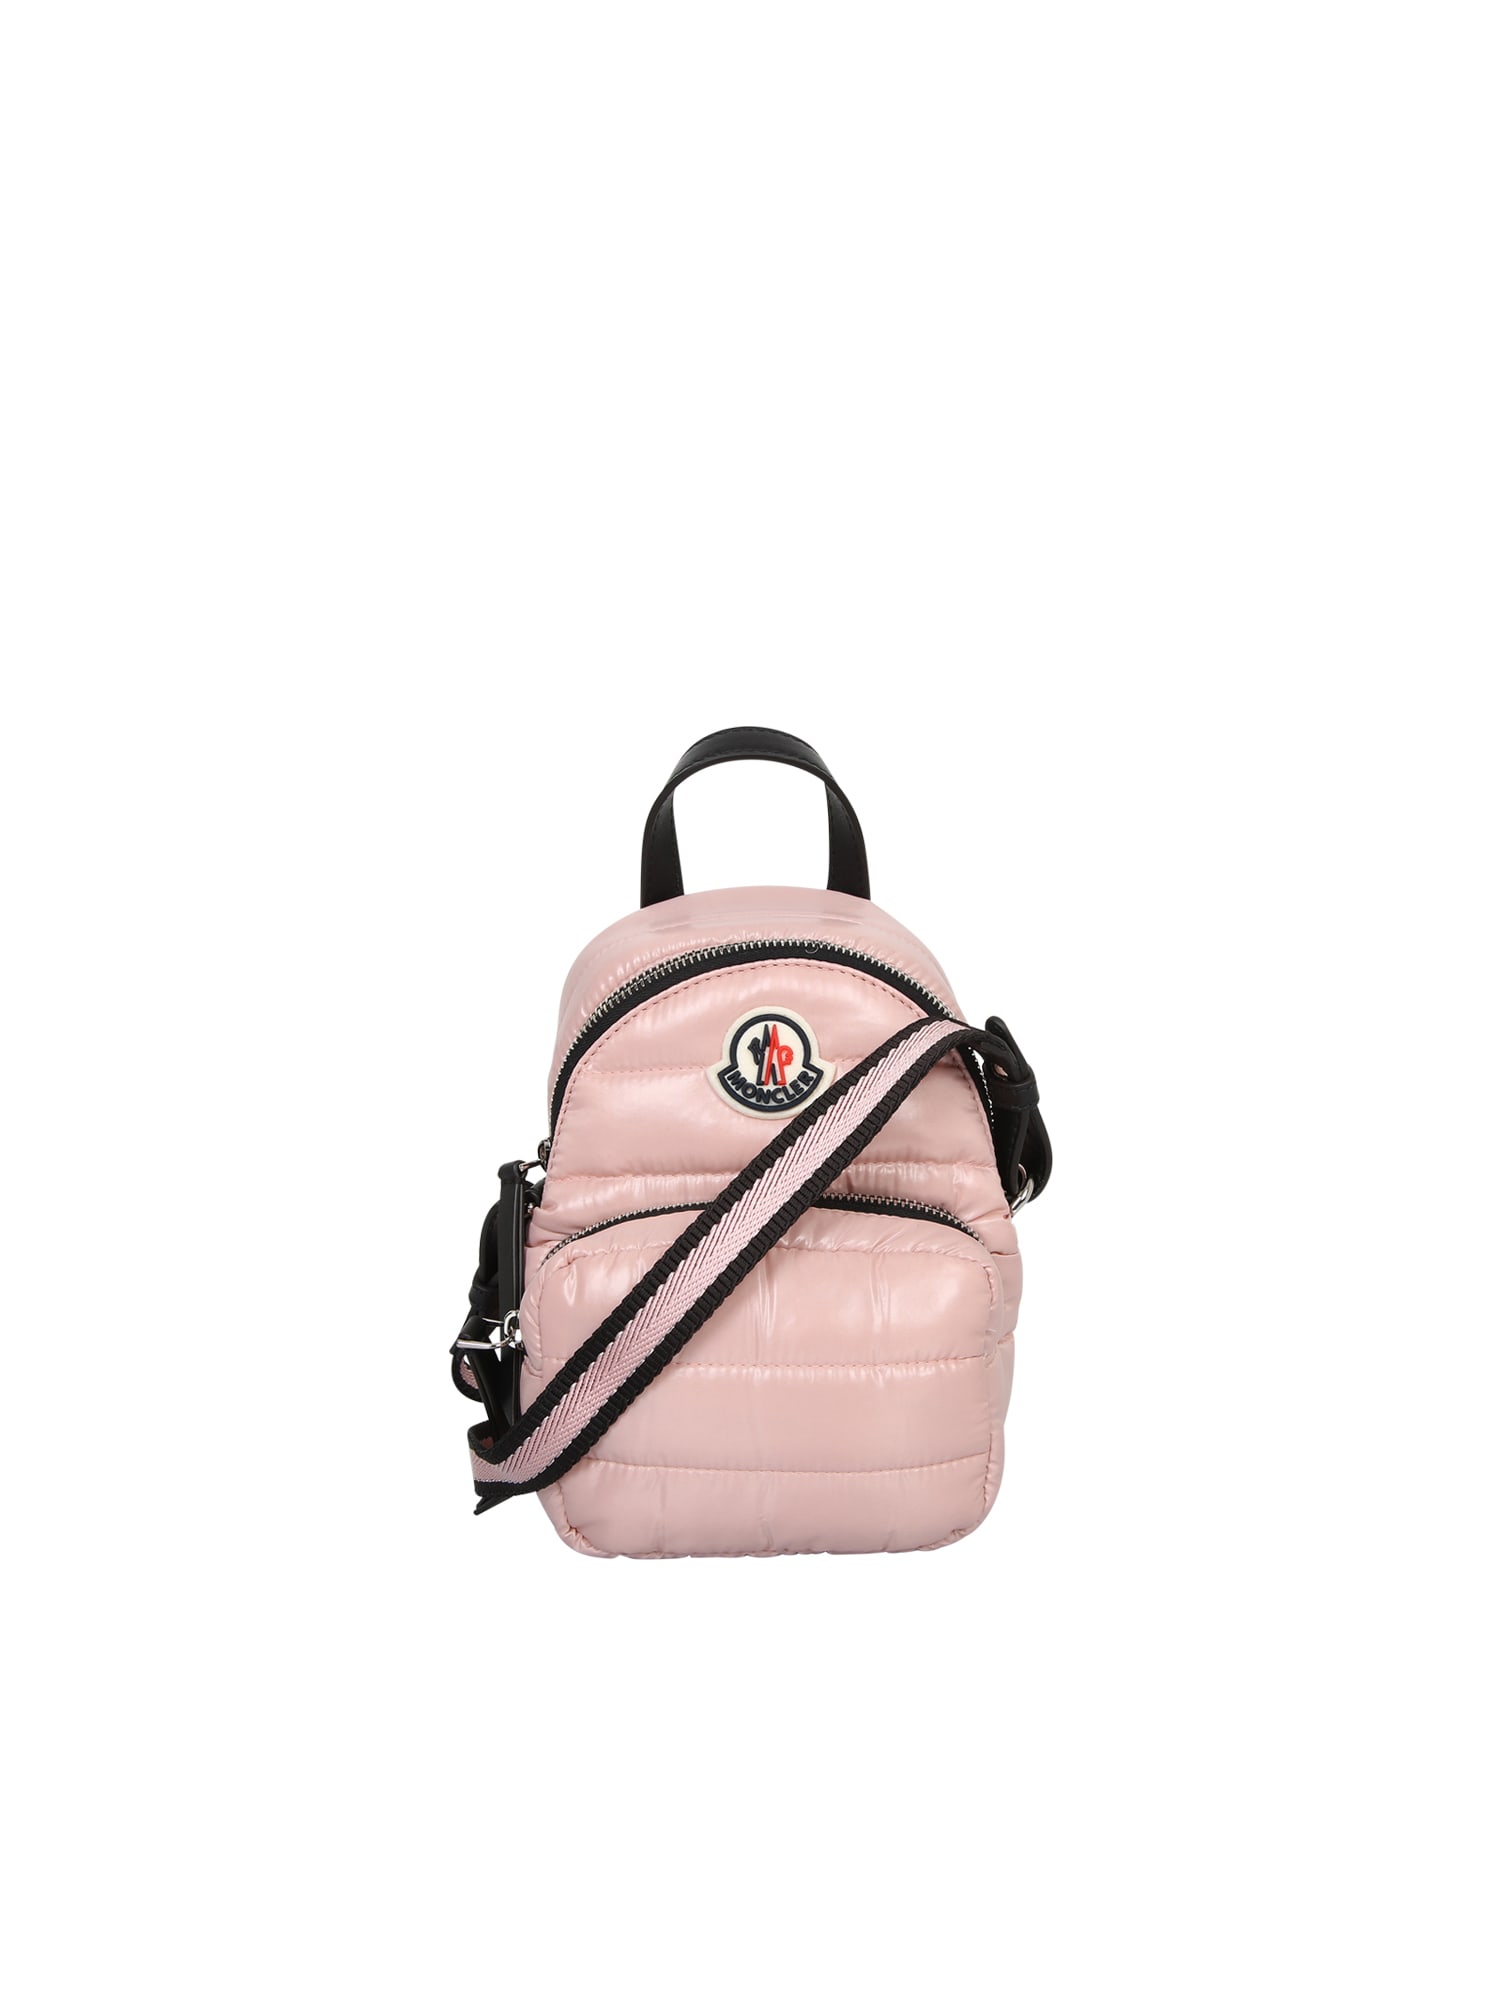 Moncler Small Kilia Backpack